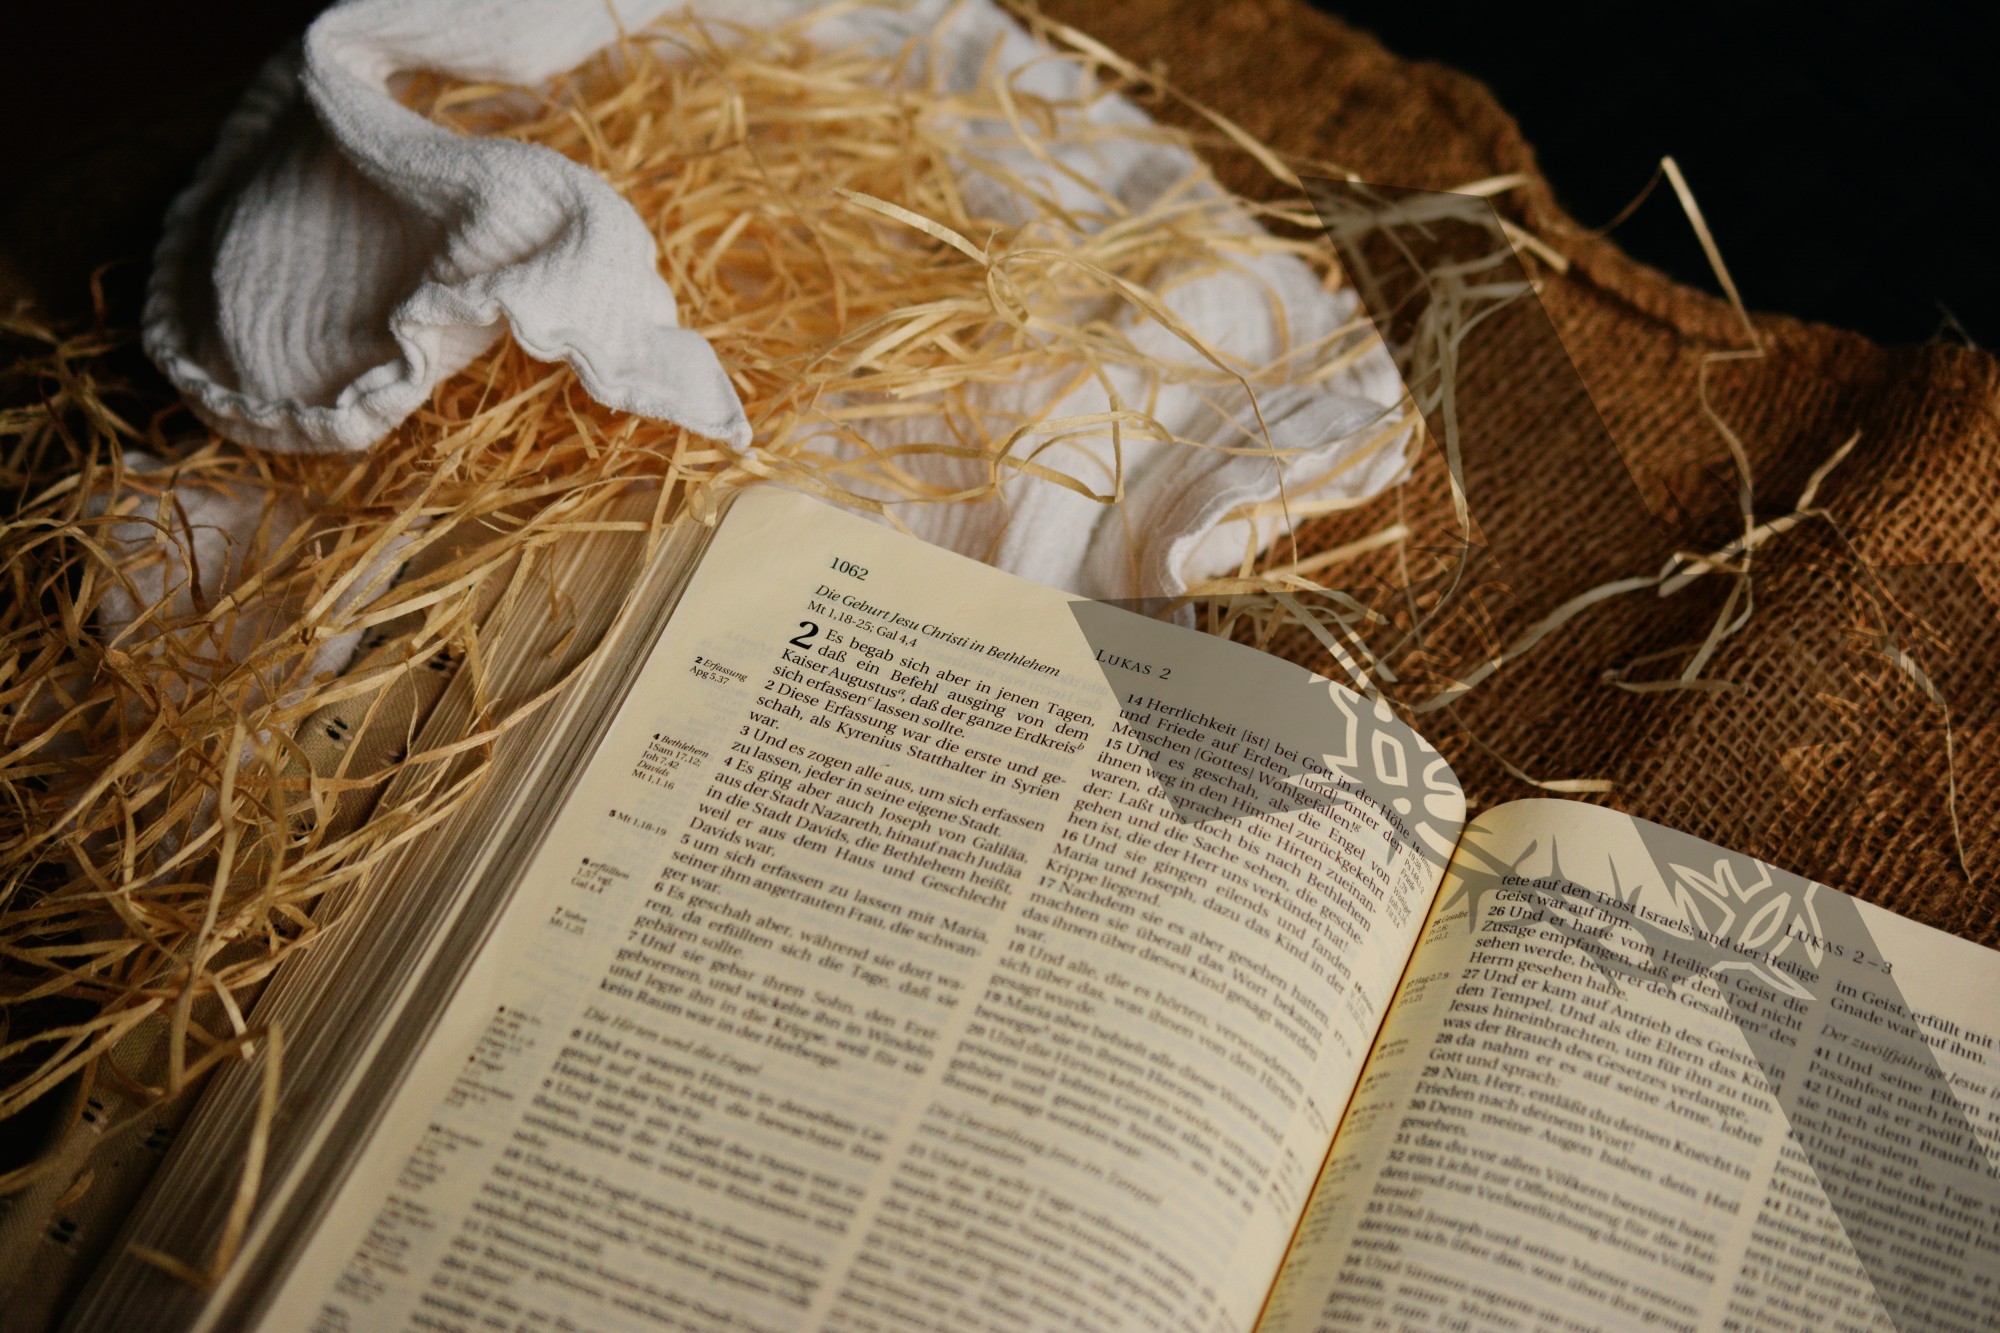 Biblia - aut. congerdesign, Pixabay 